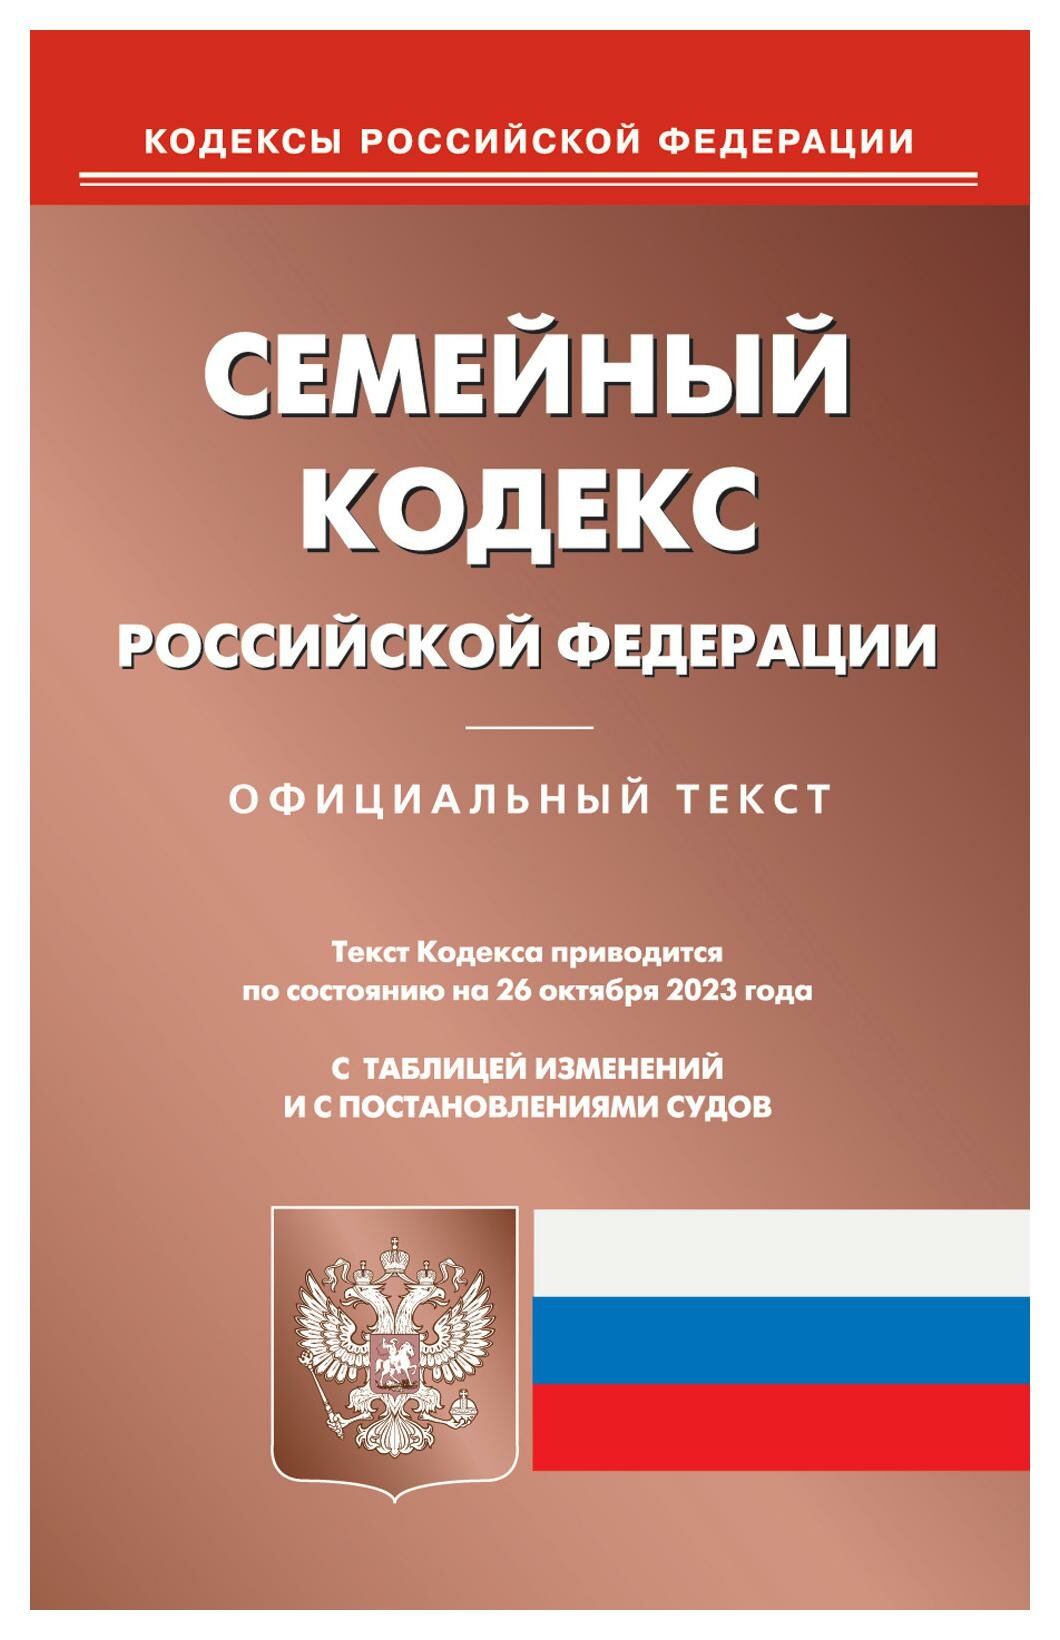 Семейный кодекс Российской Федерации по состоянию на 26 октября 2023 года - фото №1